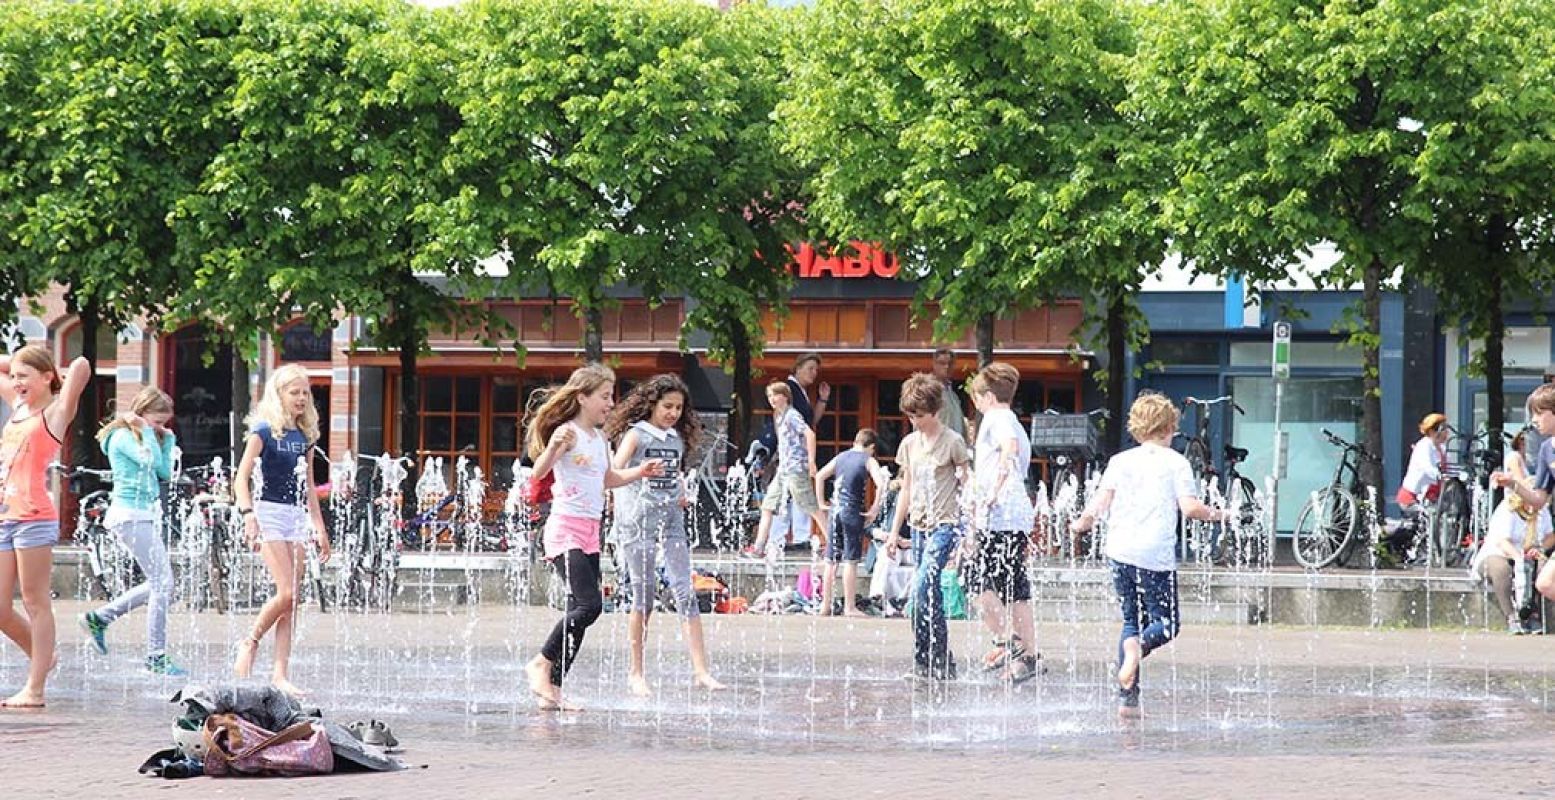 Er zijn genoeg leuke kinderactiviteiten tijdens het hemelvaartsweekend in Groningen. Foto: Redactie DagjeWeg.NL.